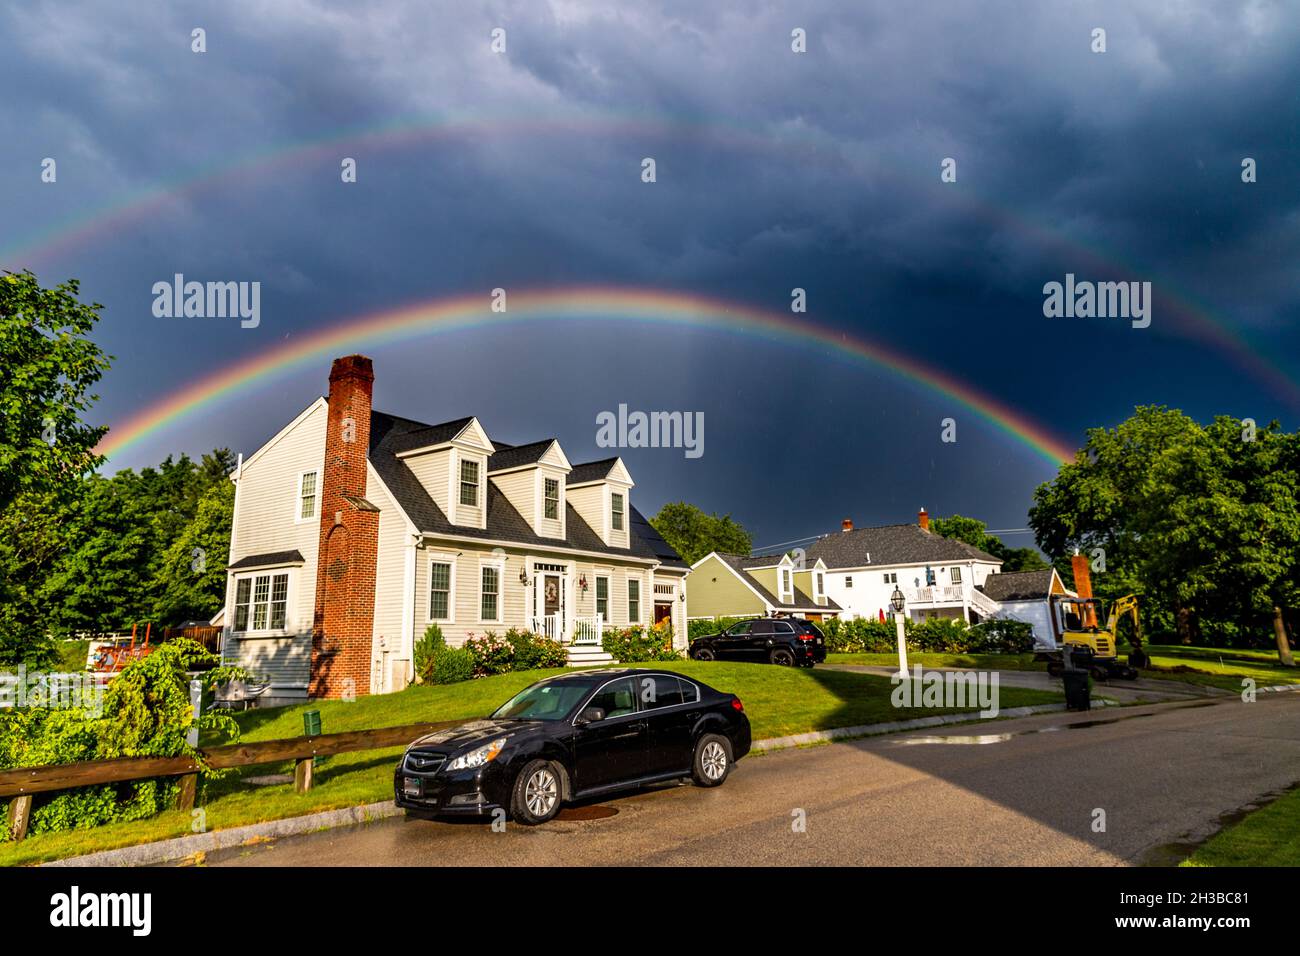 Fenomenale doppio arcobaleno che brilla sopra casa sotto un cielo drammatico. Foto Stock